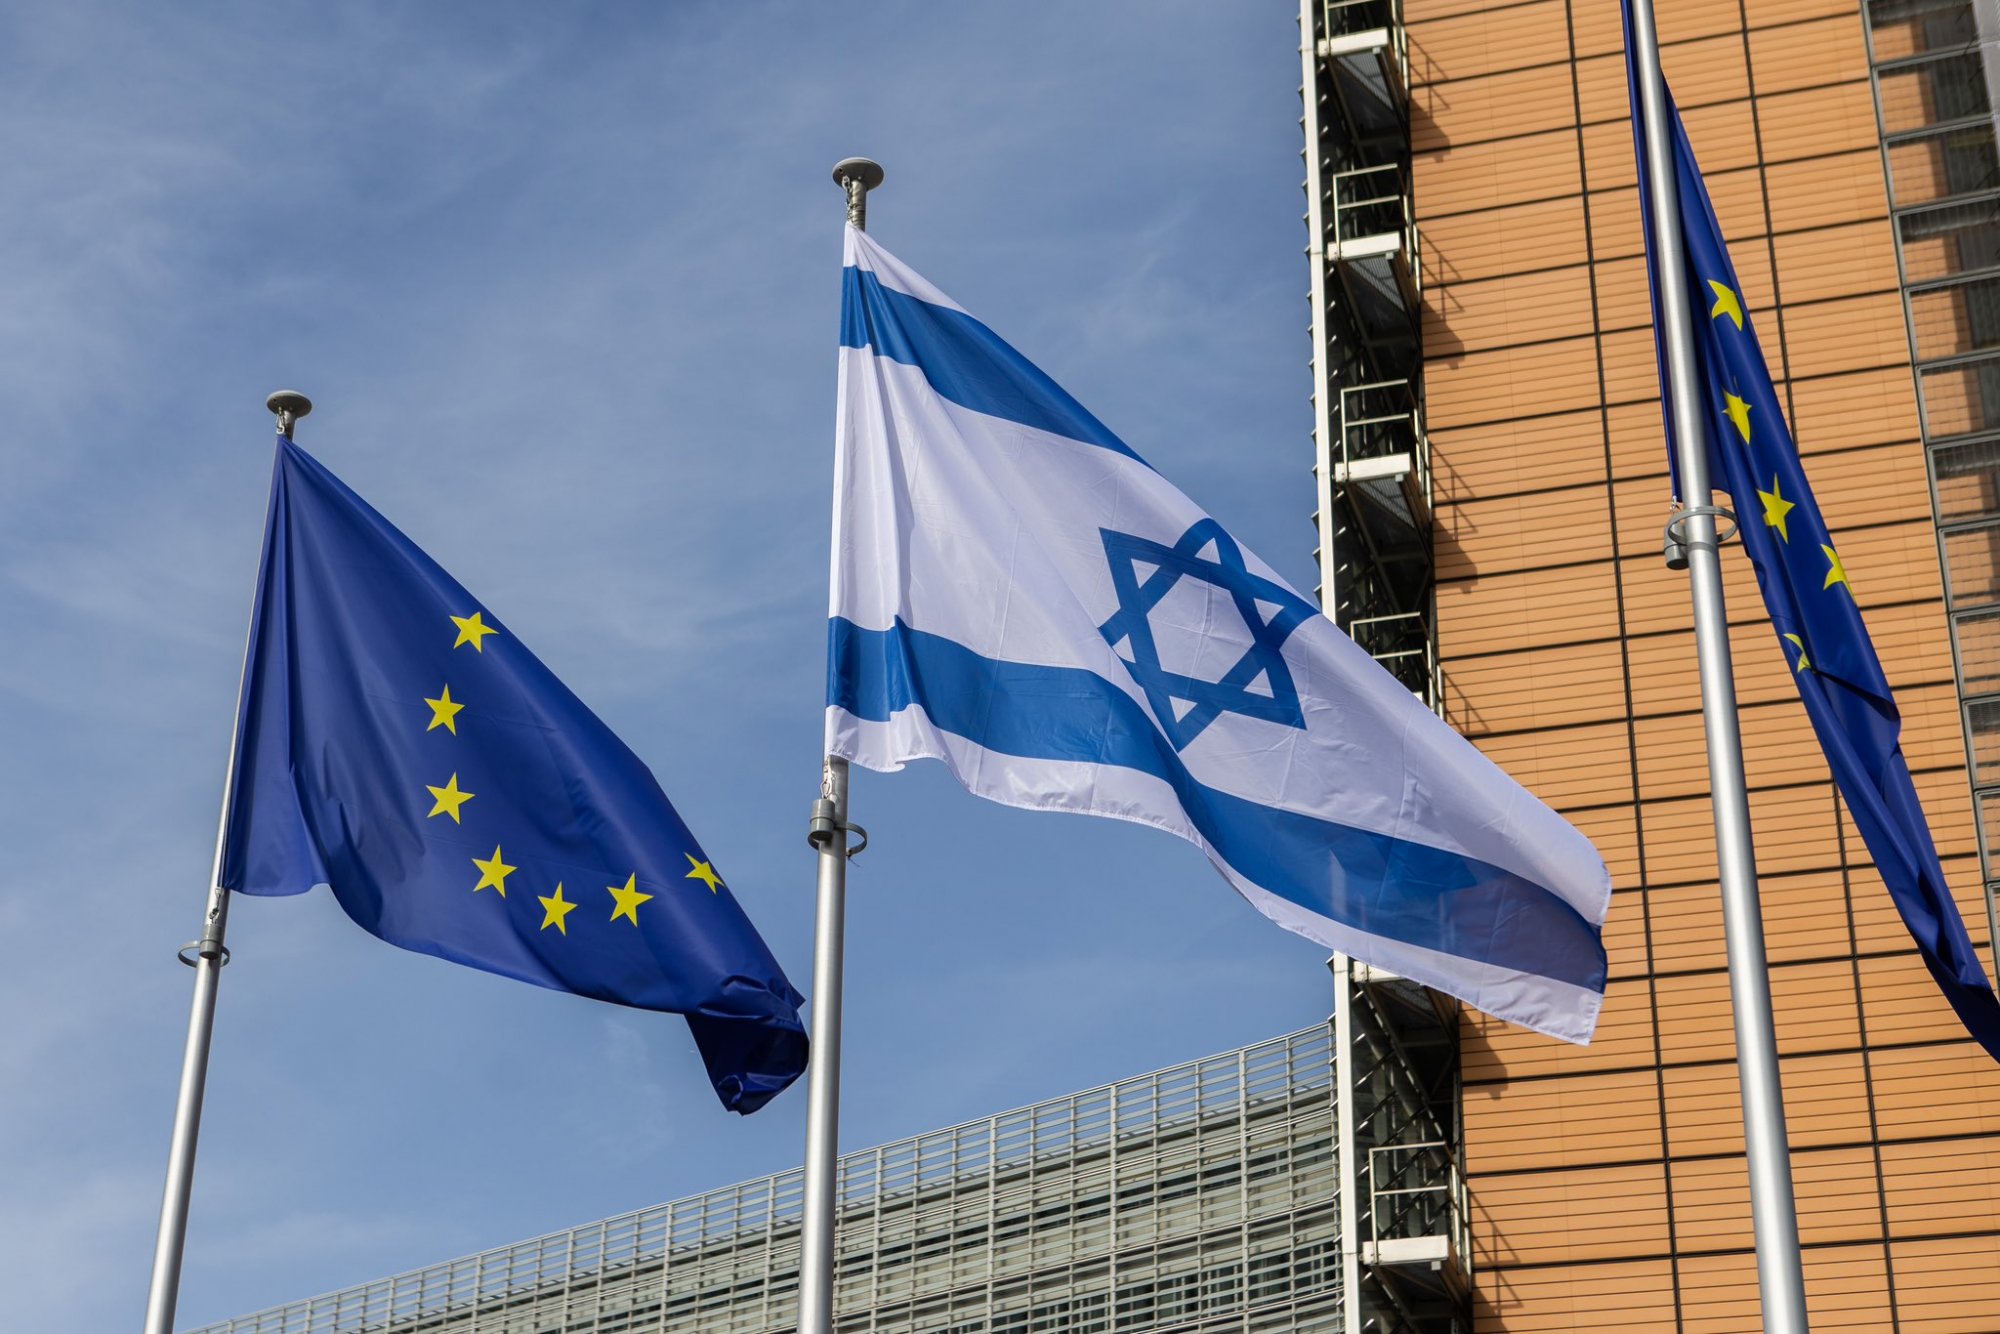 Η σημαία του Ισραήλ κυματίζει δίπλα από της Ευρωπαϊκής Ένωσης στις Βρυξέλλες